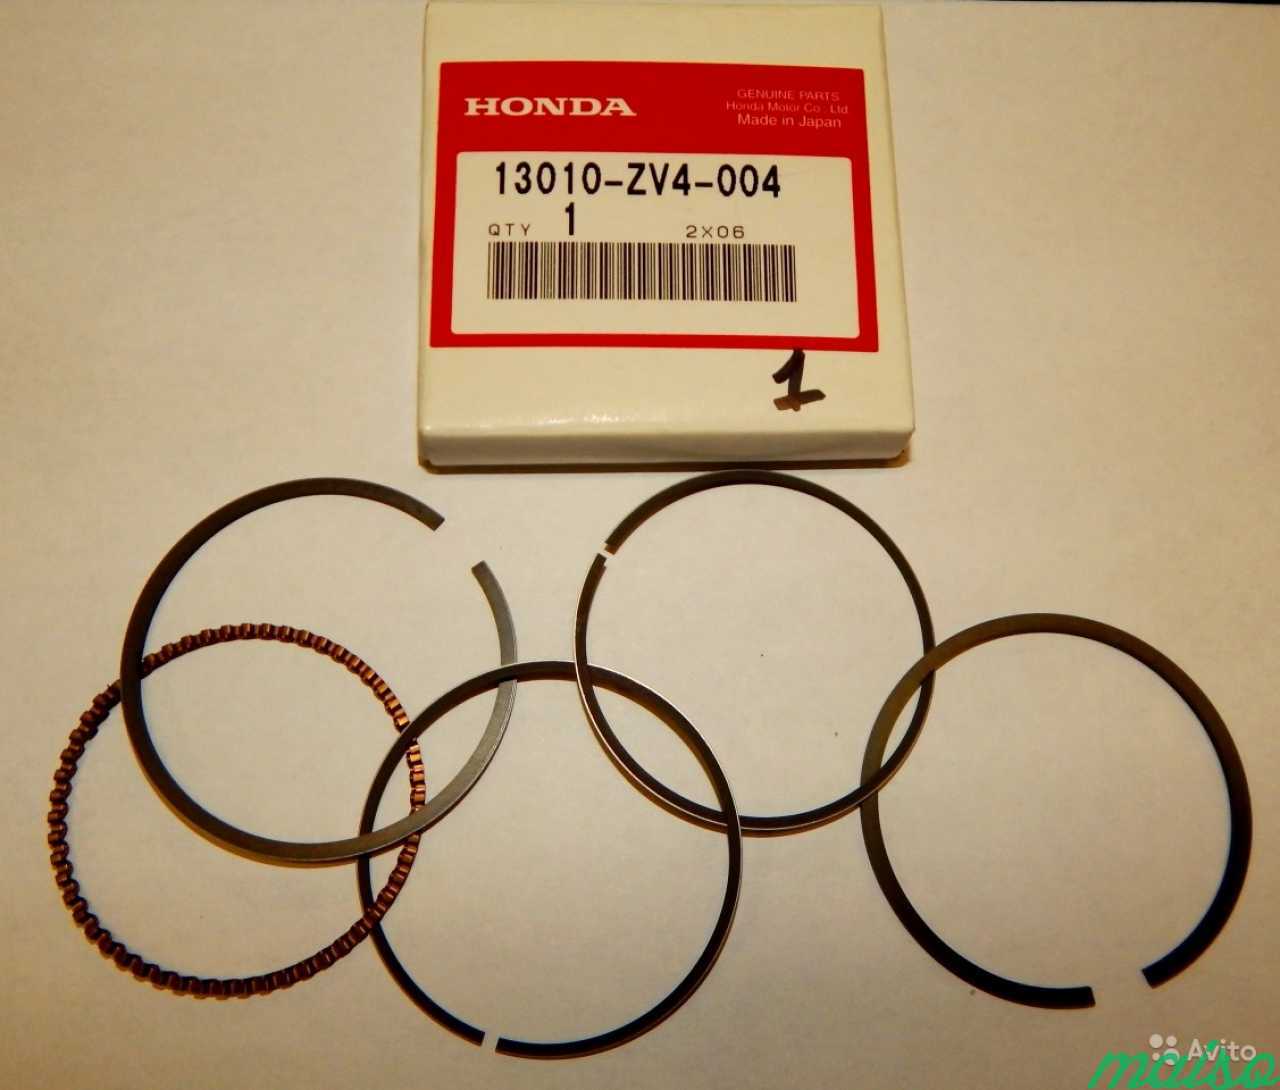 13010-ZV4-004 Поршневые кольца Honda в Санкт-Петербурге. Фото 1